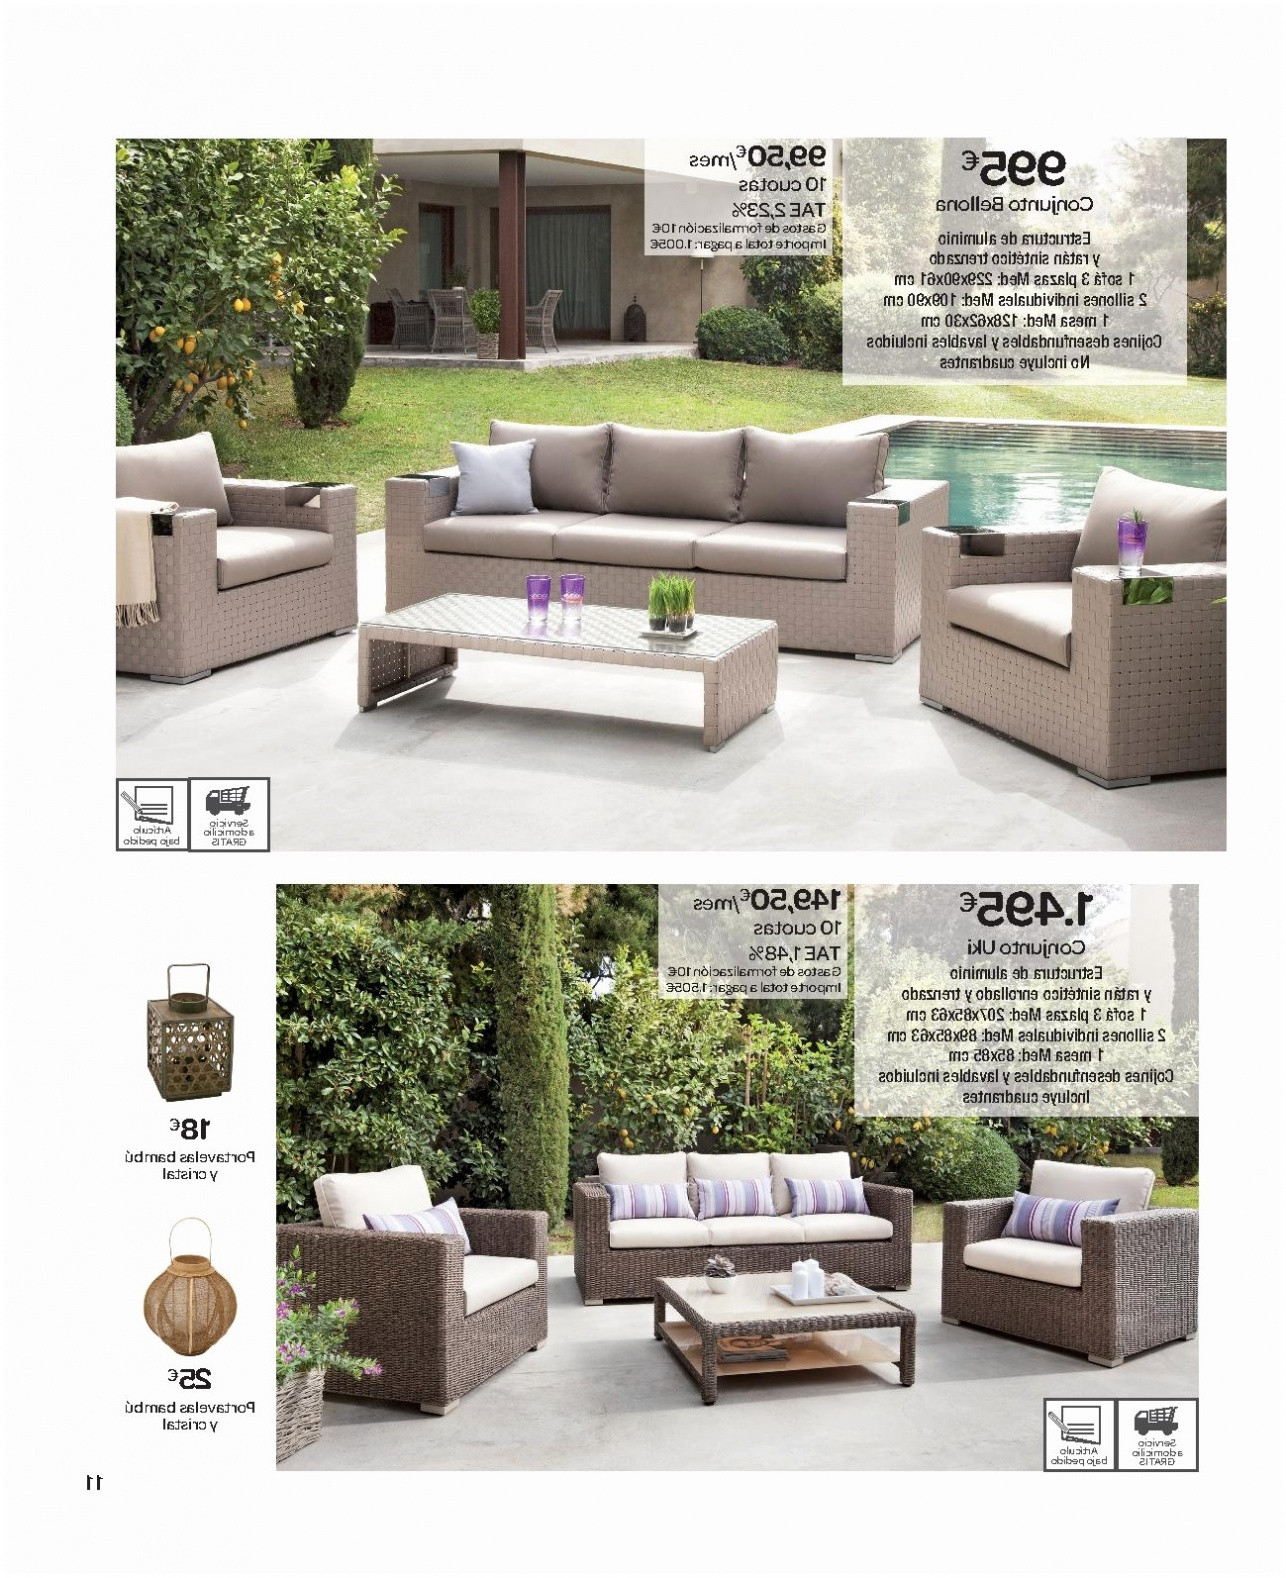 meubles de jardin design inicio muebles para terraza bogotaeslacumbre of meubles de jardin design